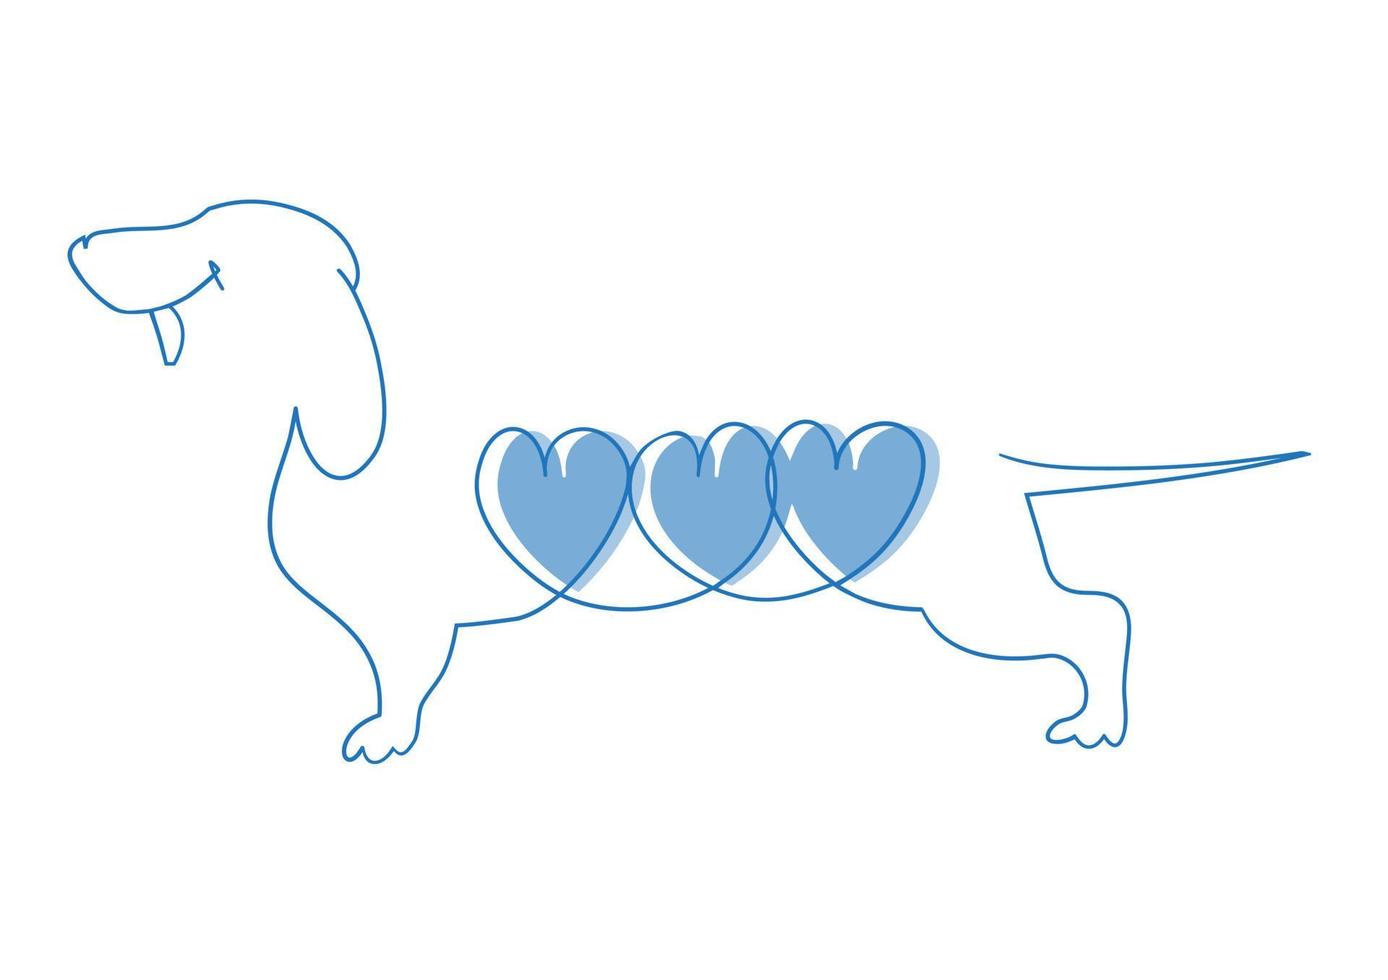 teckel met drie blauw harten. een doorlopend single tekening lijn, vlak tekening, teckel, huisdier, dier, hond, rasecht, hond, vriend. vector